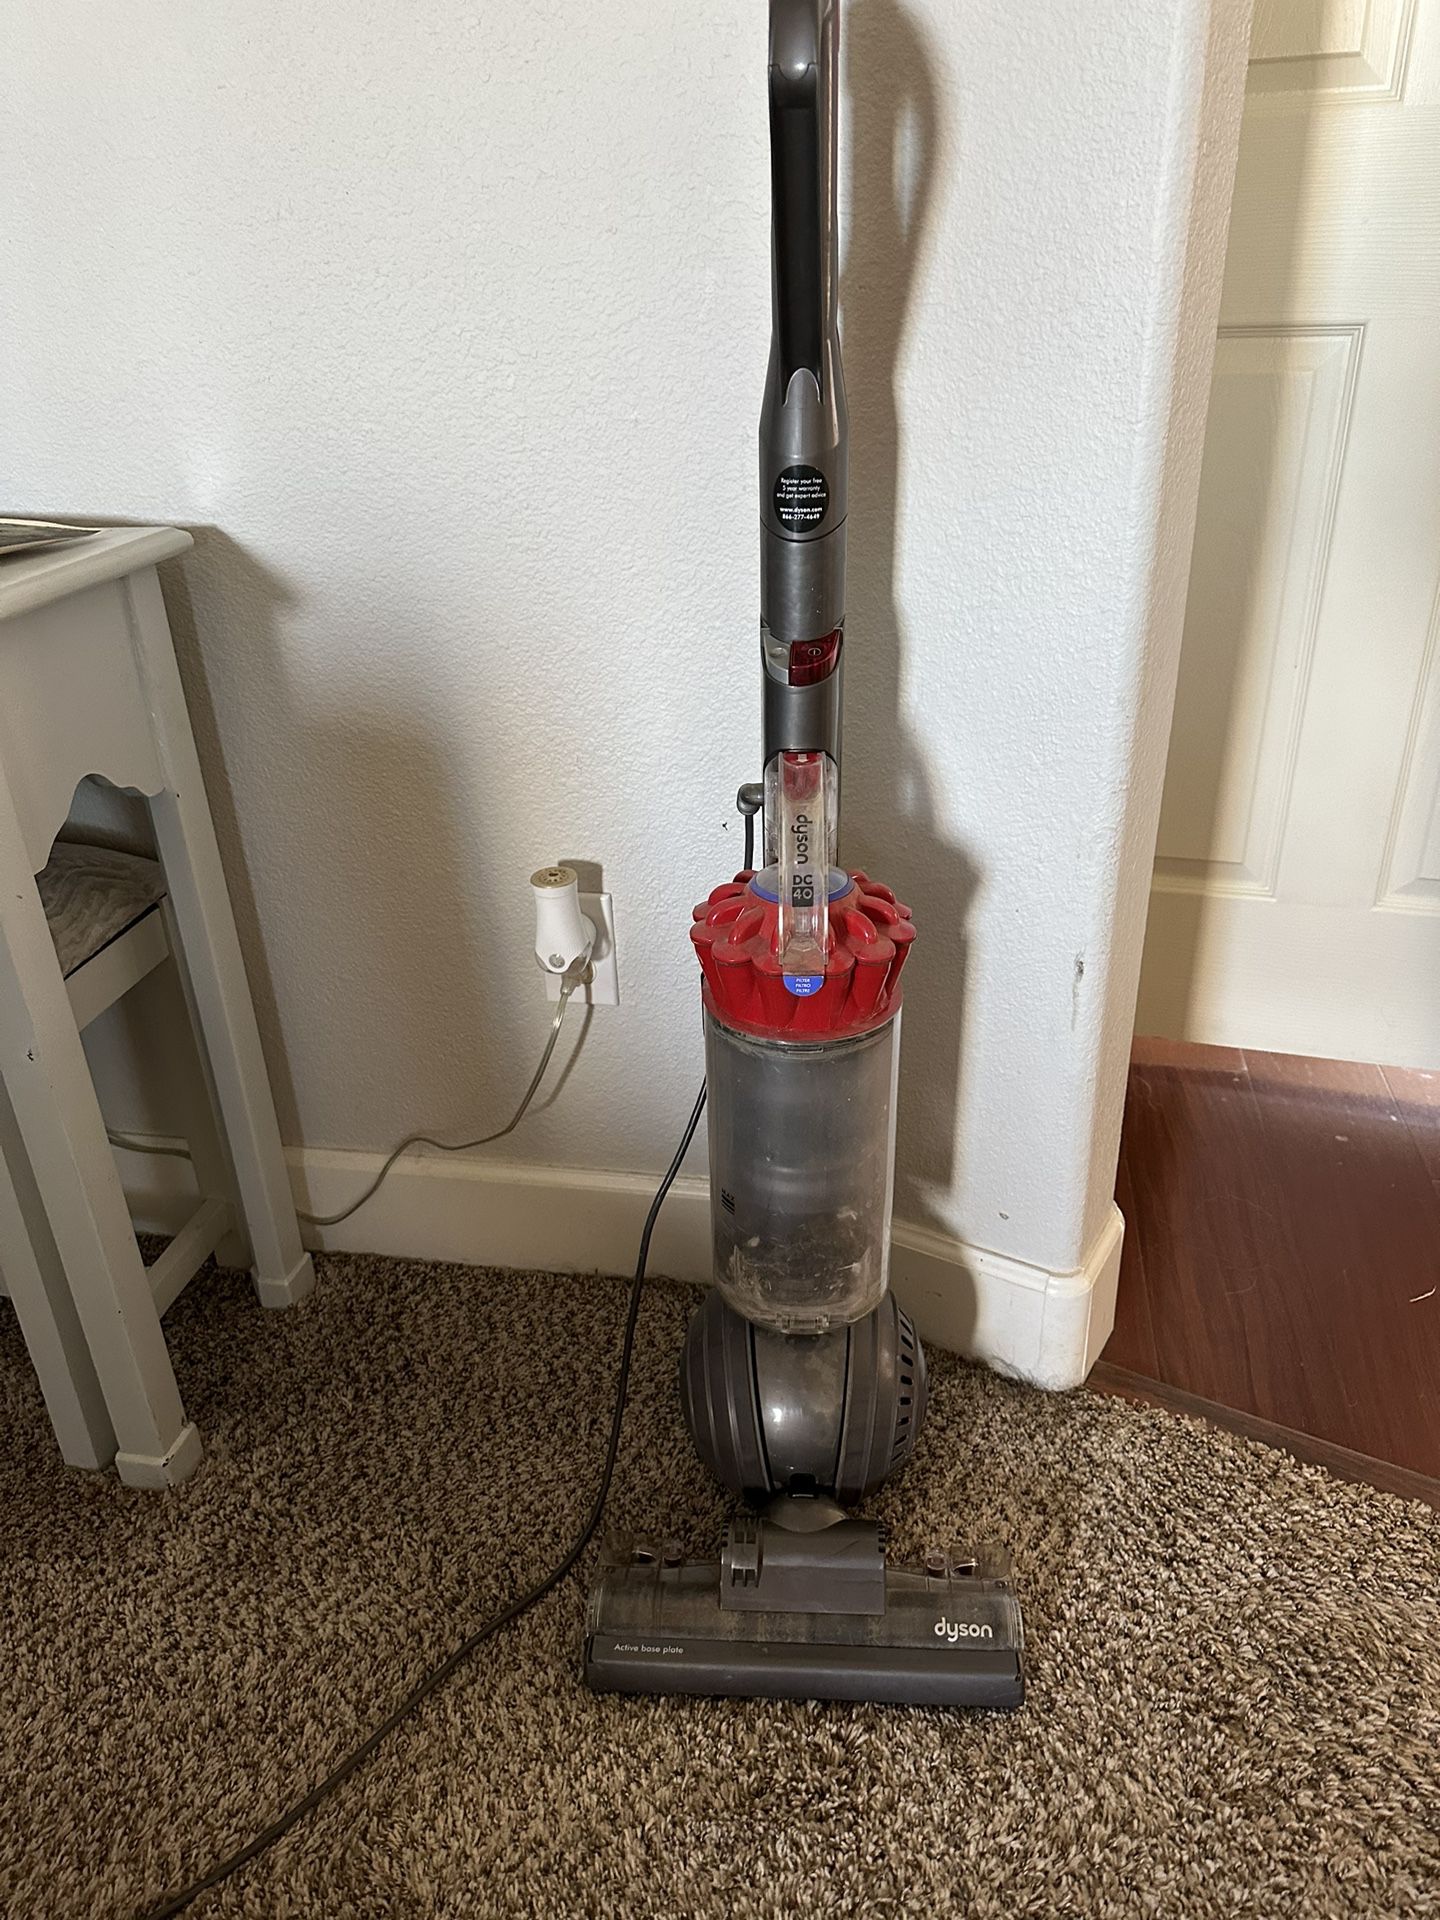 Dyson Dc 40 Pet Vacuum 